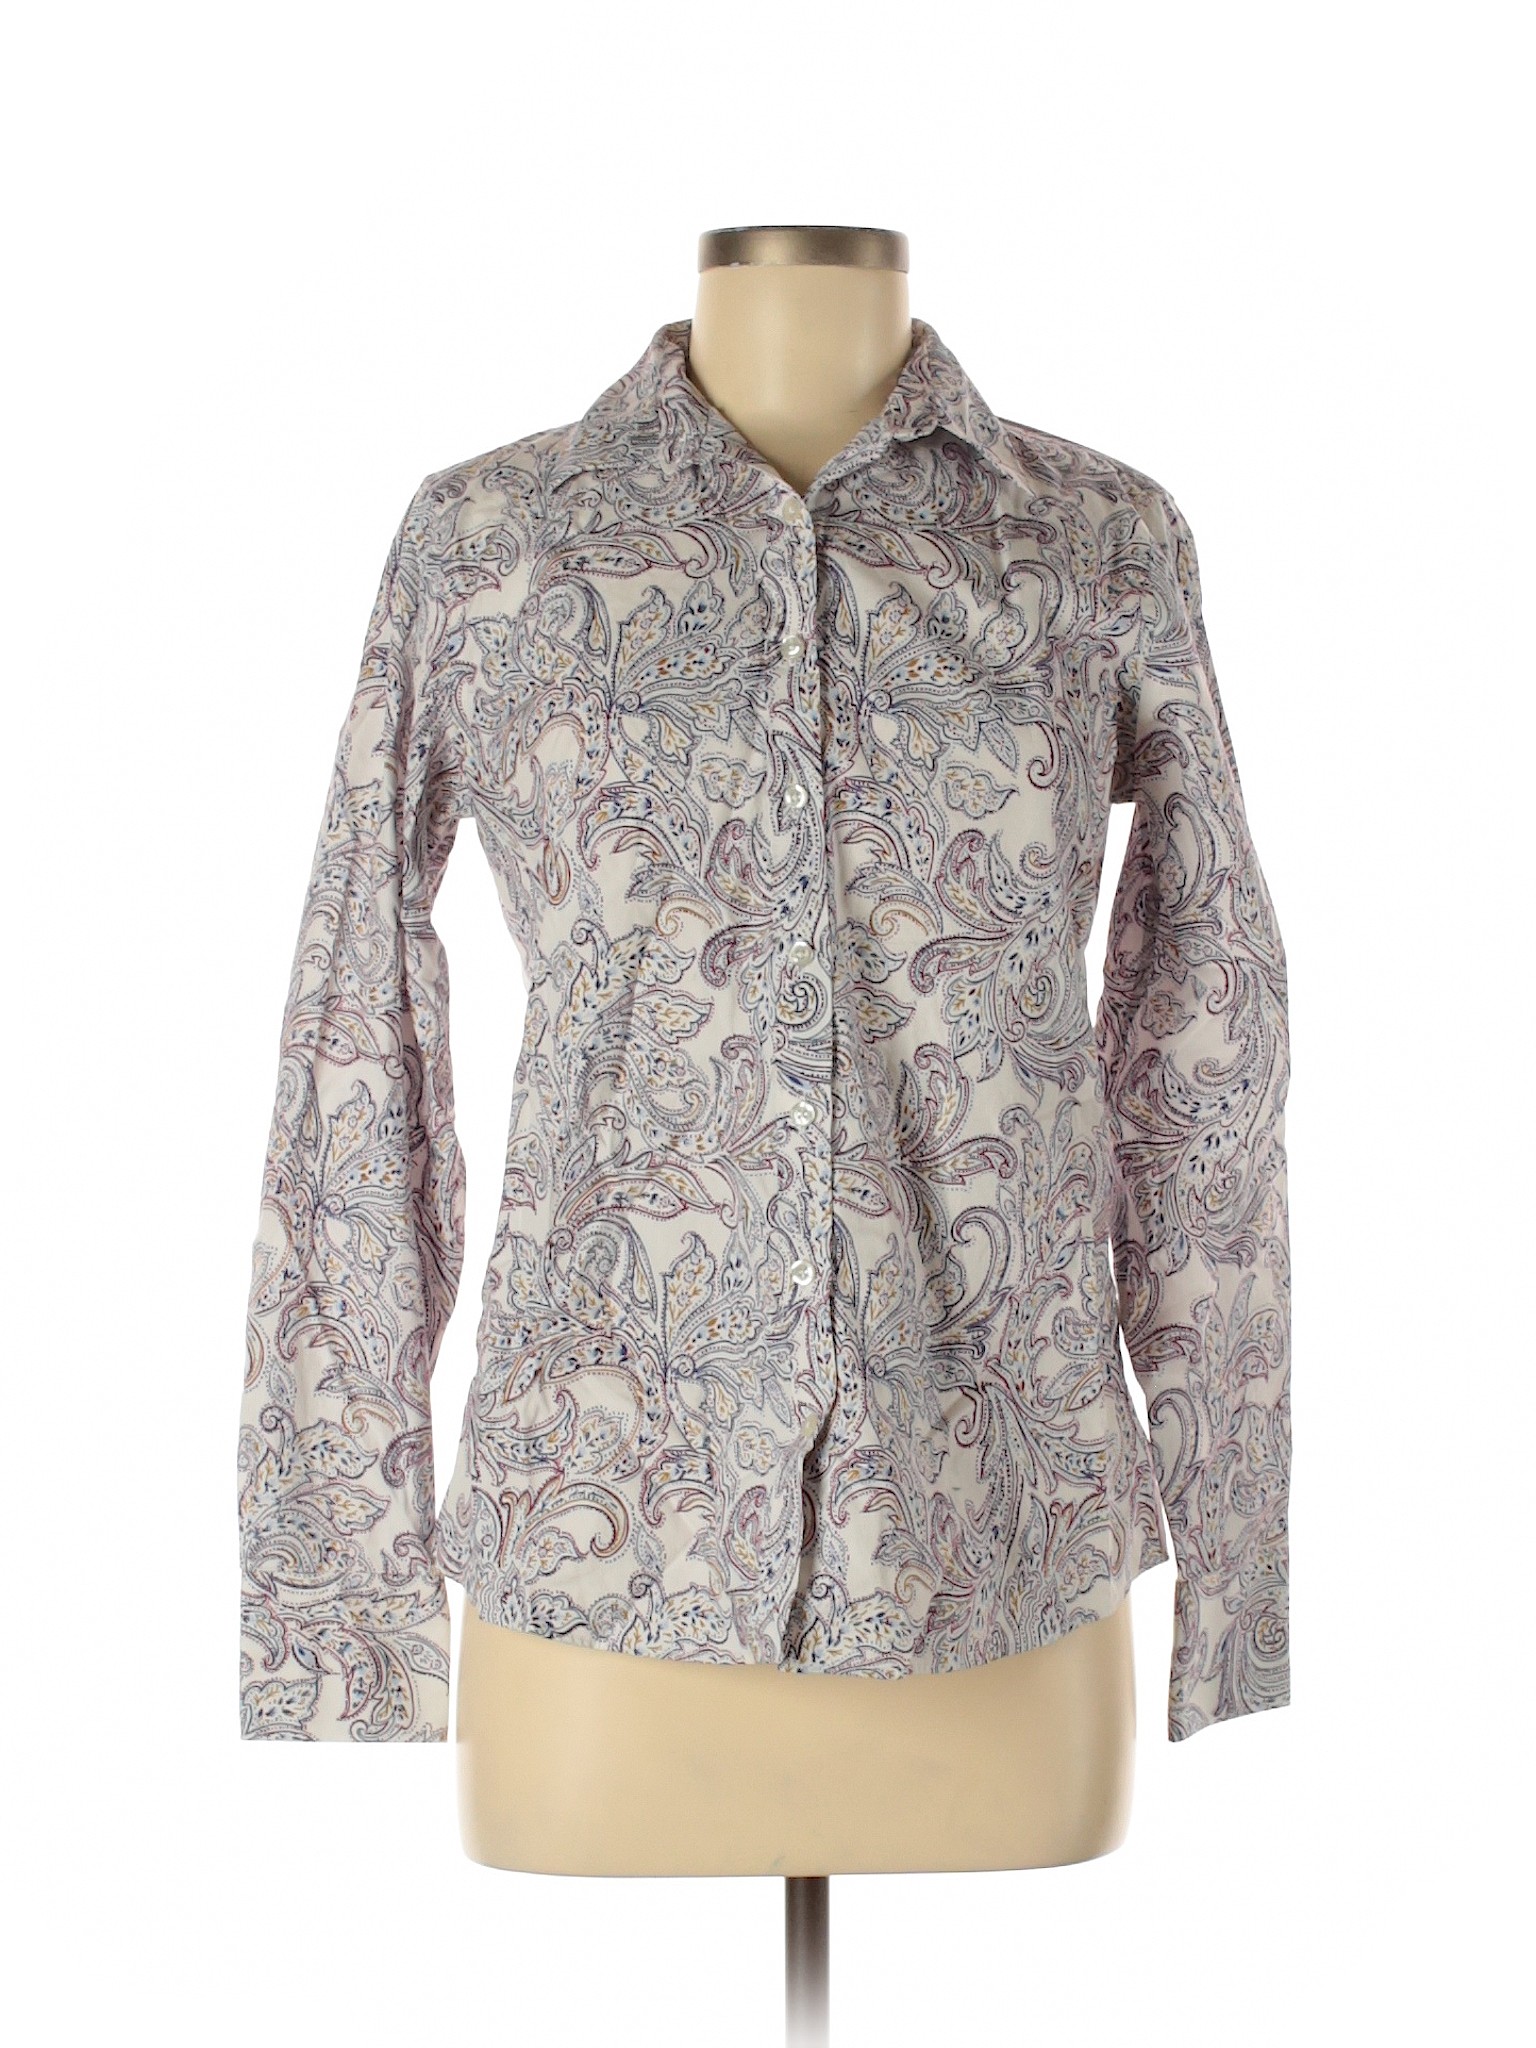 Lands' End Women Purple Long Sleeve Button-Down Shirt 6 | eBay